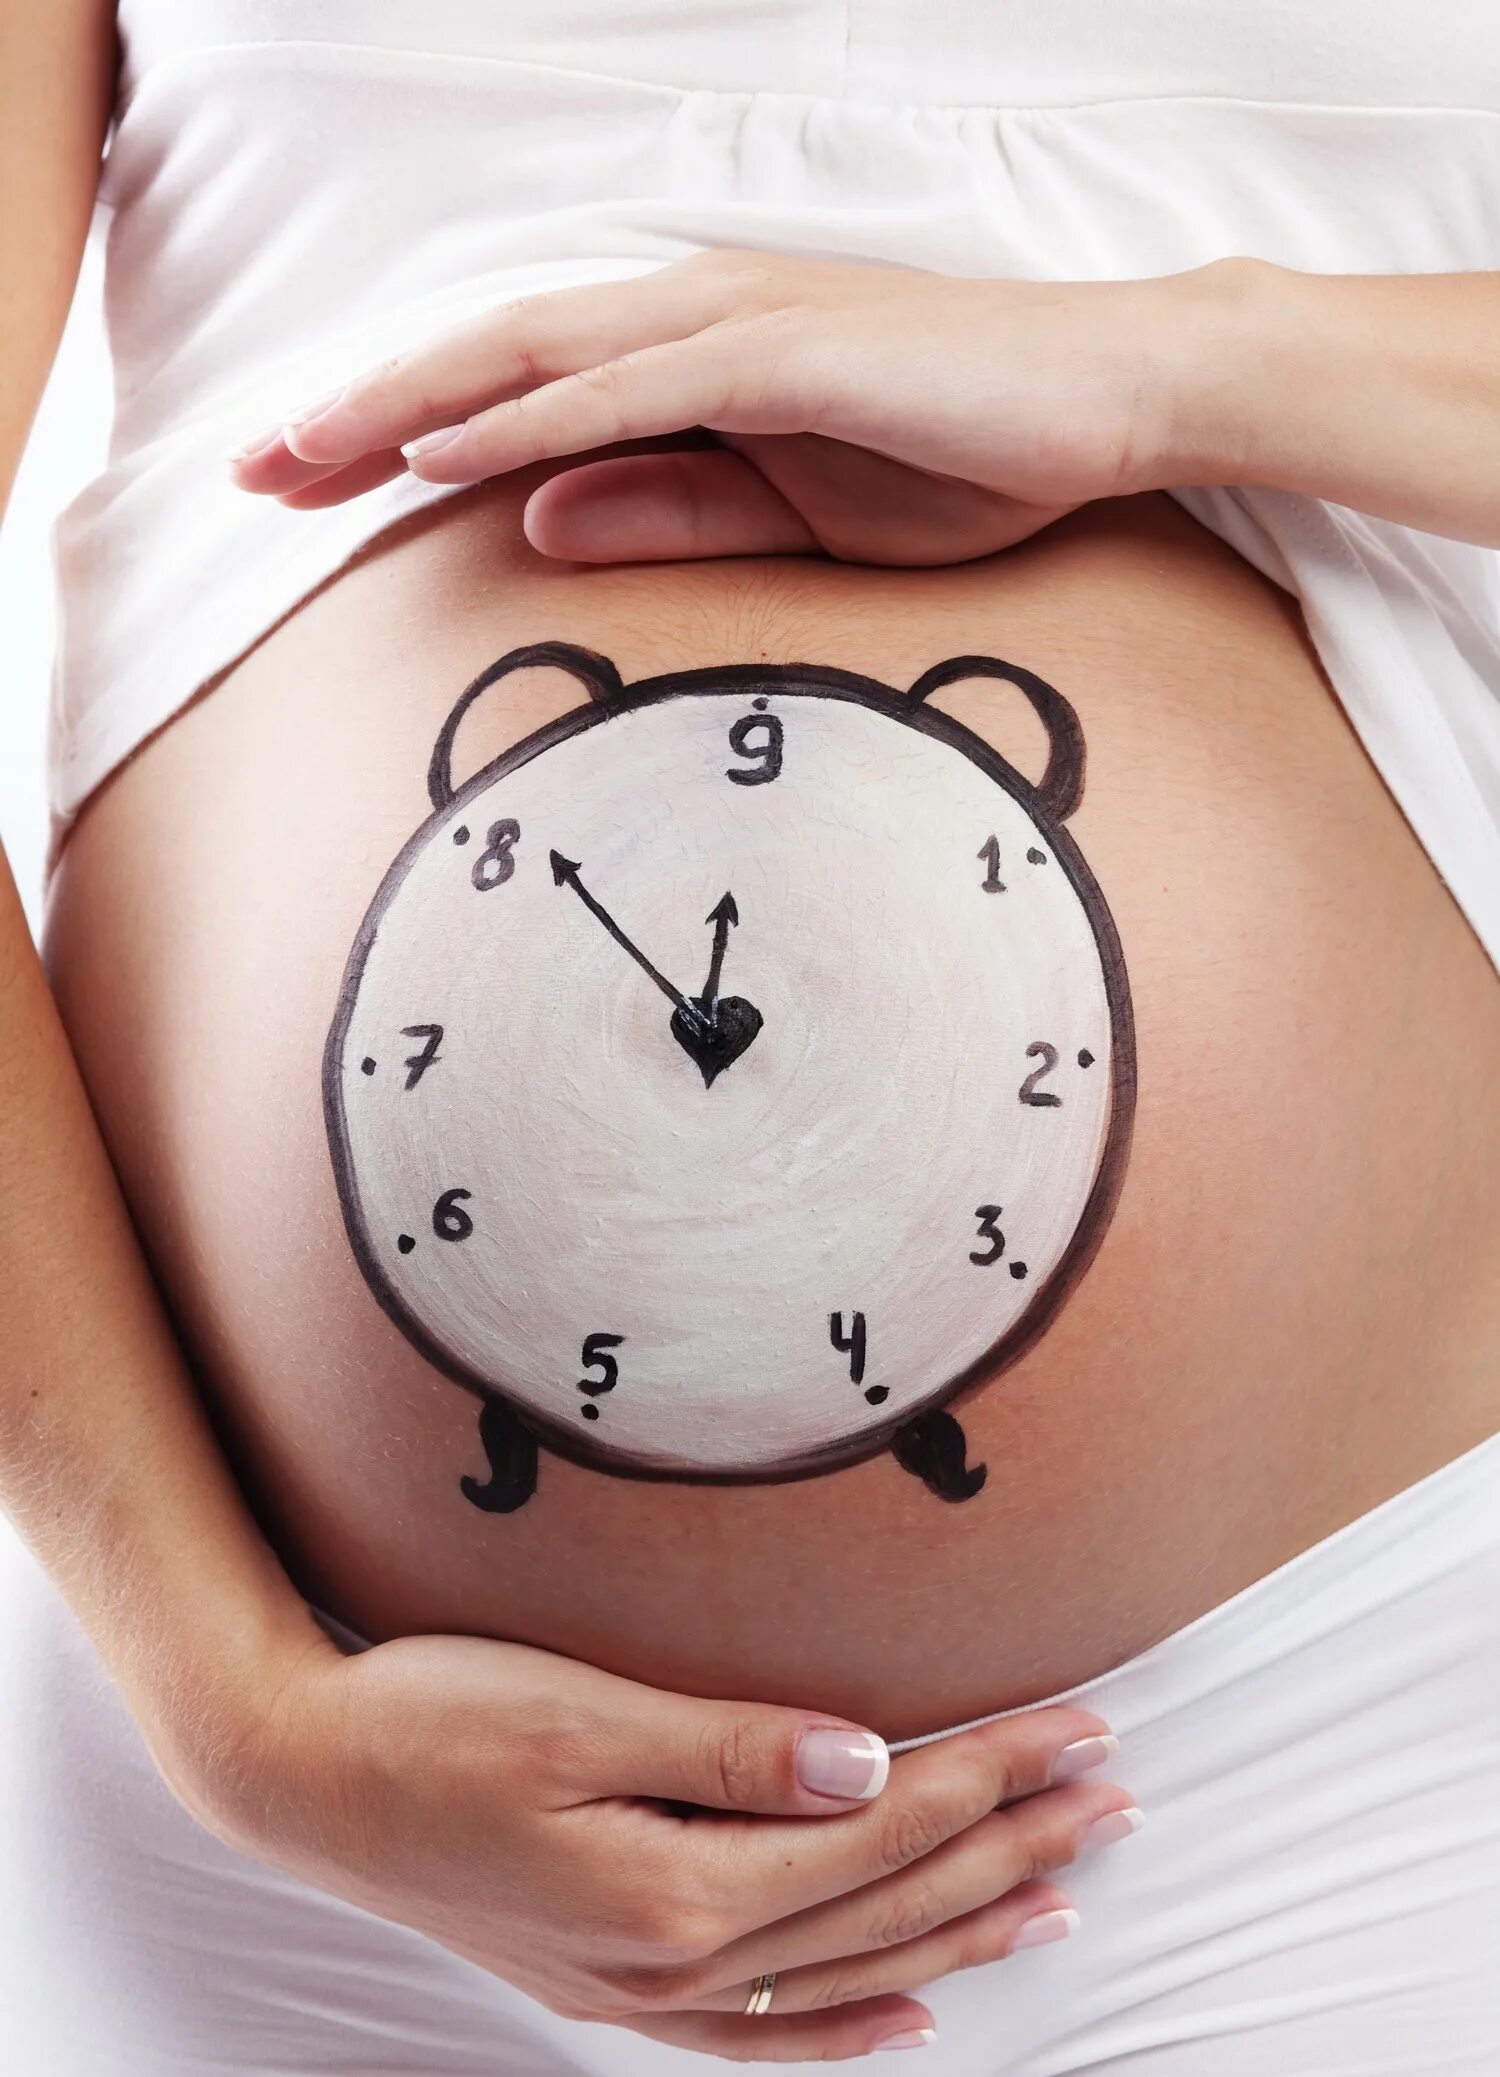 Живот беременной и часы. Часы на животе. Беременные животики.